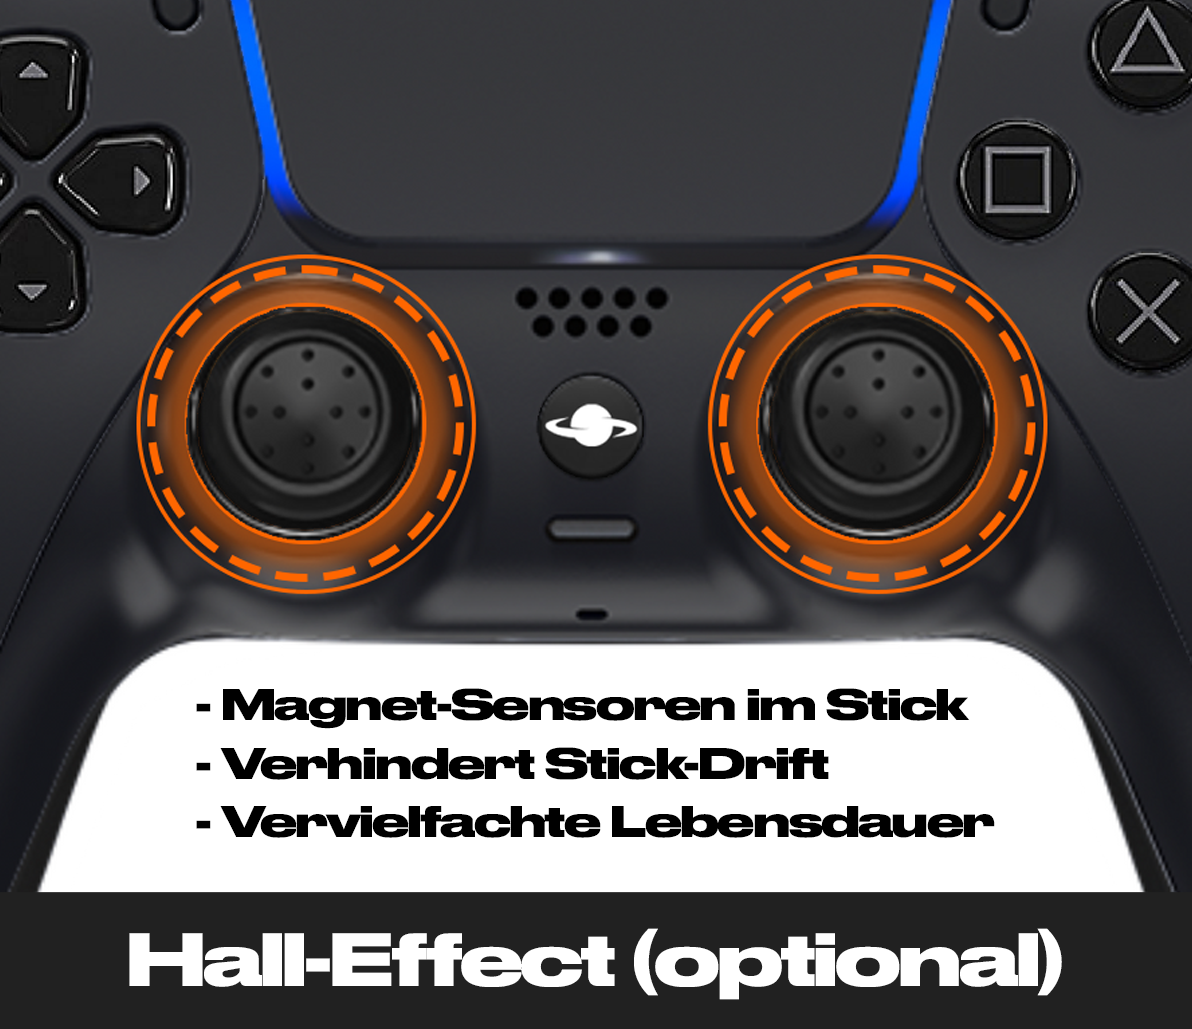 Controlador personalizado de PS5 'Verde transparente'